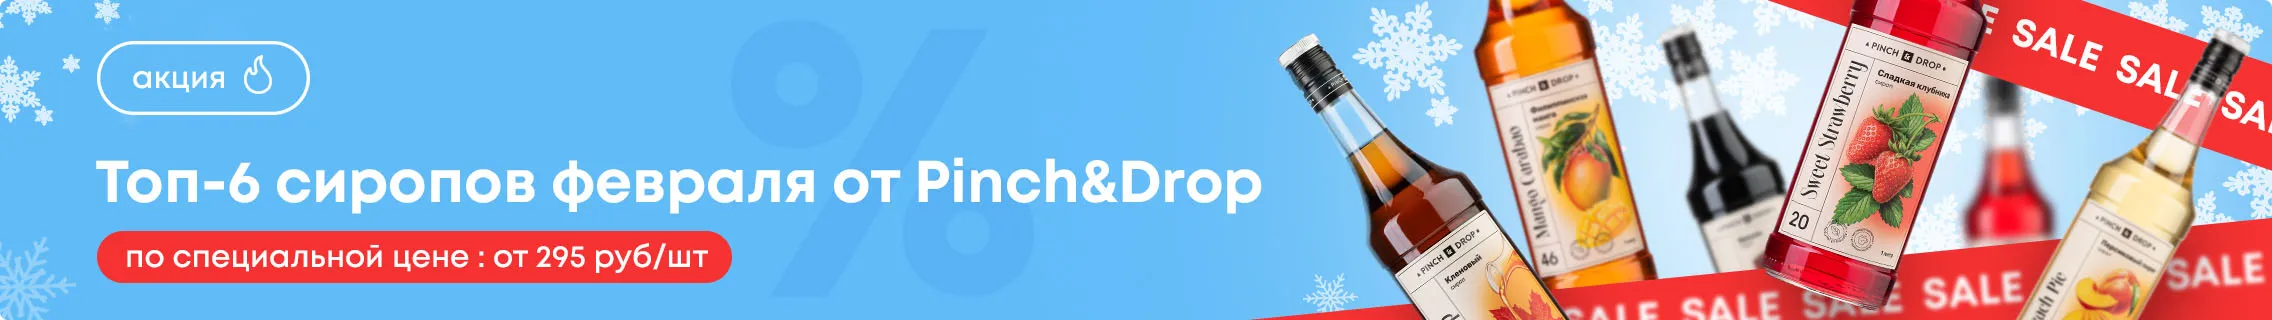 Топ-6 сиропов февраля от Pinch&Drop Категорийный